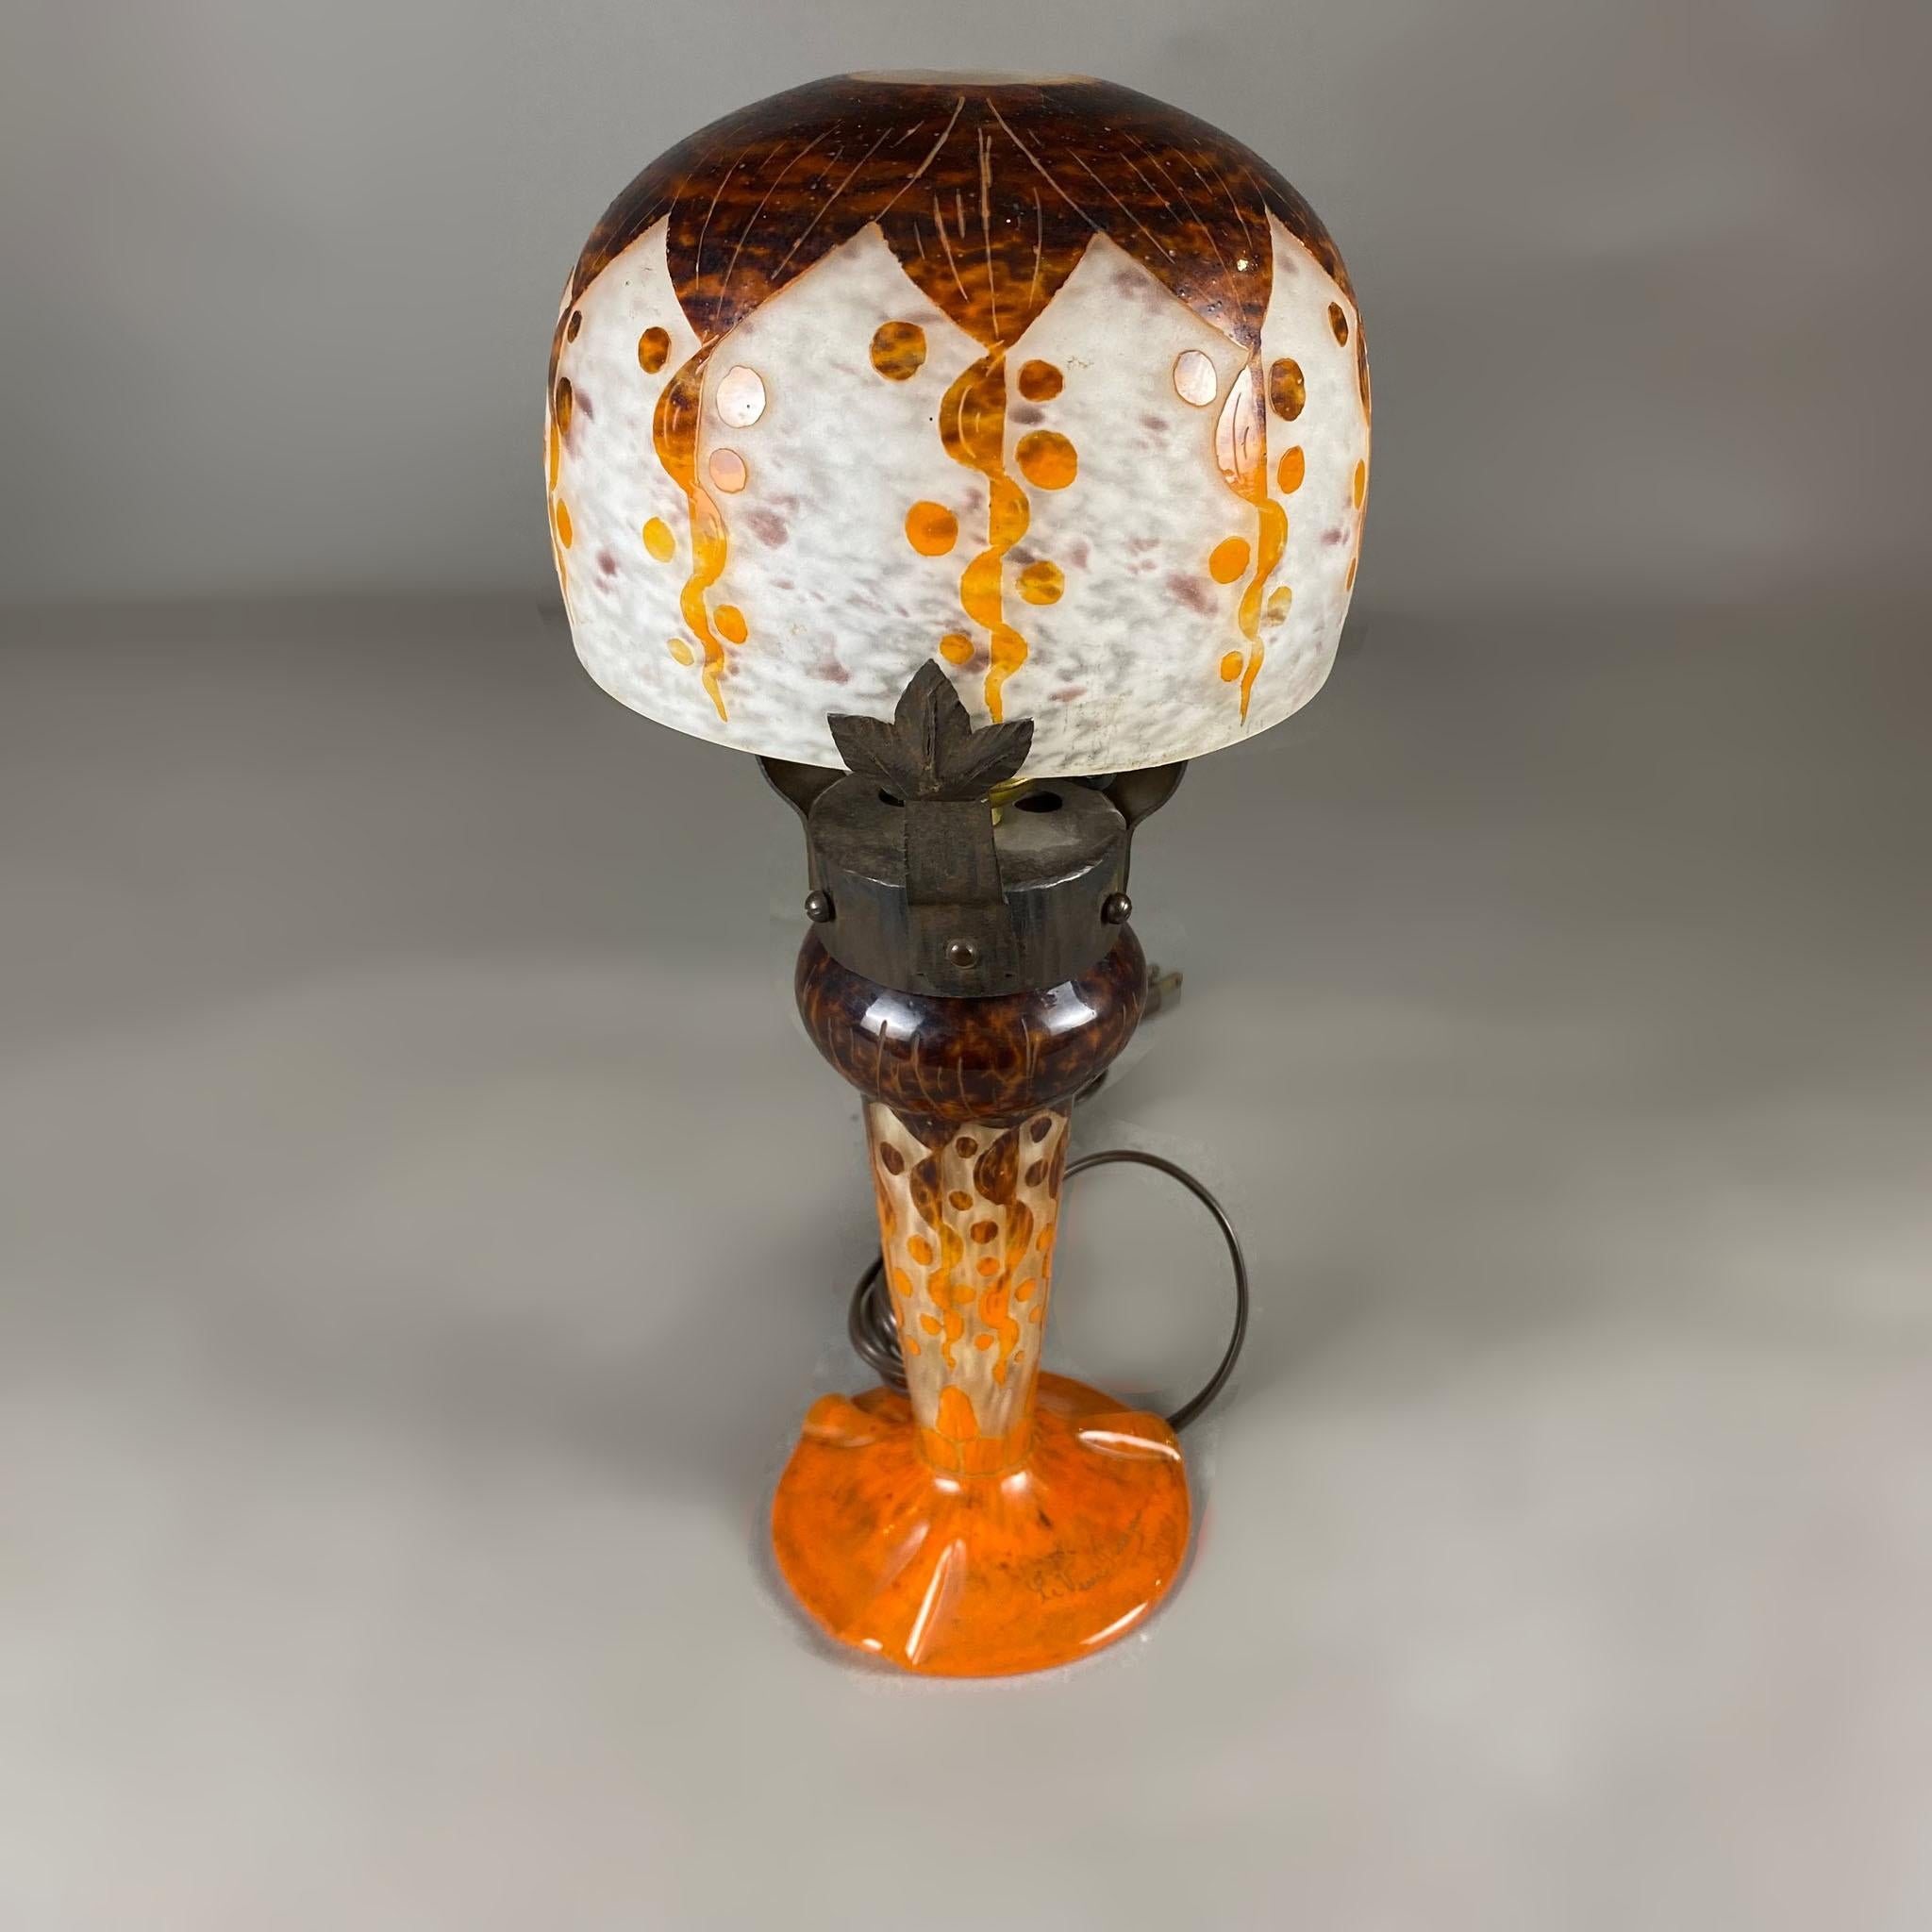 Lampe de table Rubaniers en verre camée et ferronnerie Le Verre Français des années 1920. La quincaillerie en fer rejoint les deux sections en verre camée de la lampe : l'écran supérieur en blanc, marron et orange et la base en orange et marron avec